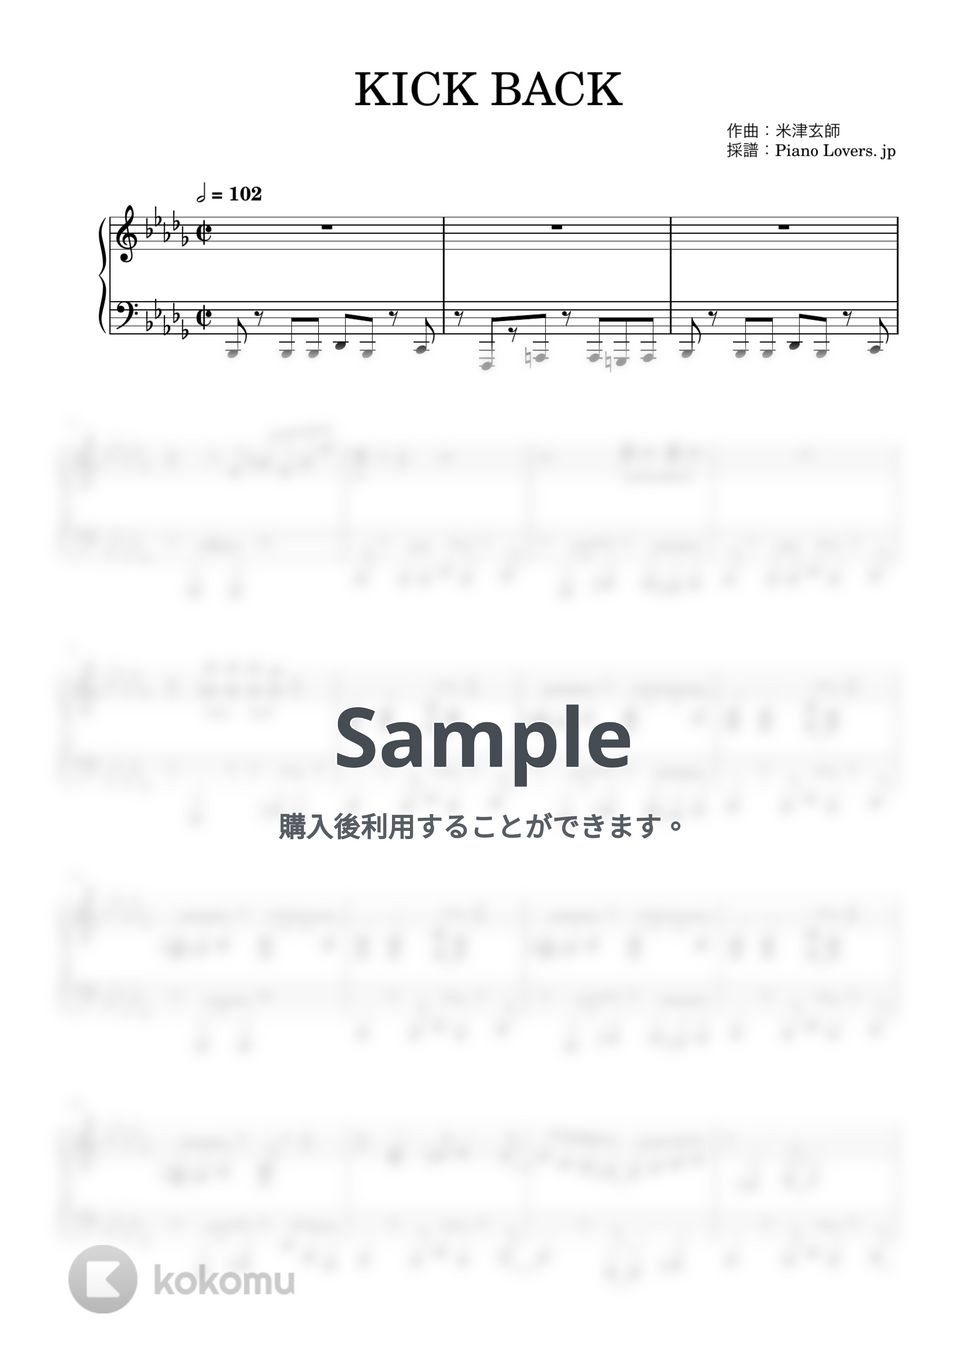 米津玄師 - KICK BACK (チェンソーマン / ピアノ楽譜 / 初級) by Piano Lovers. jp